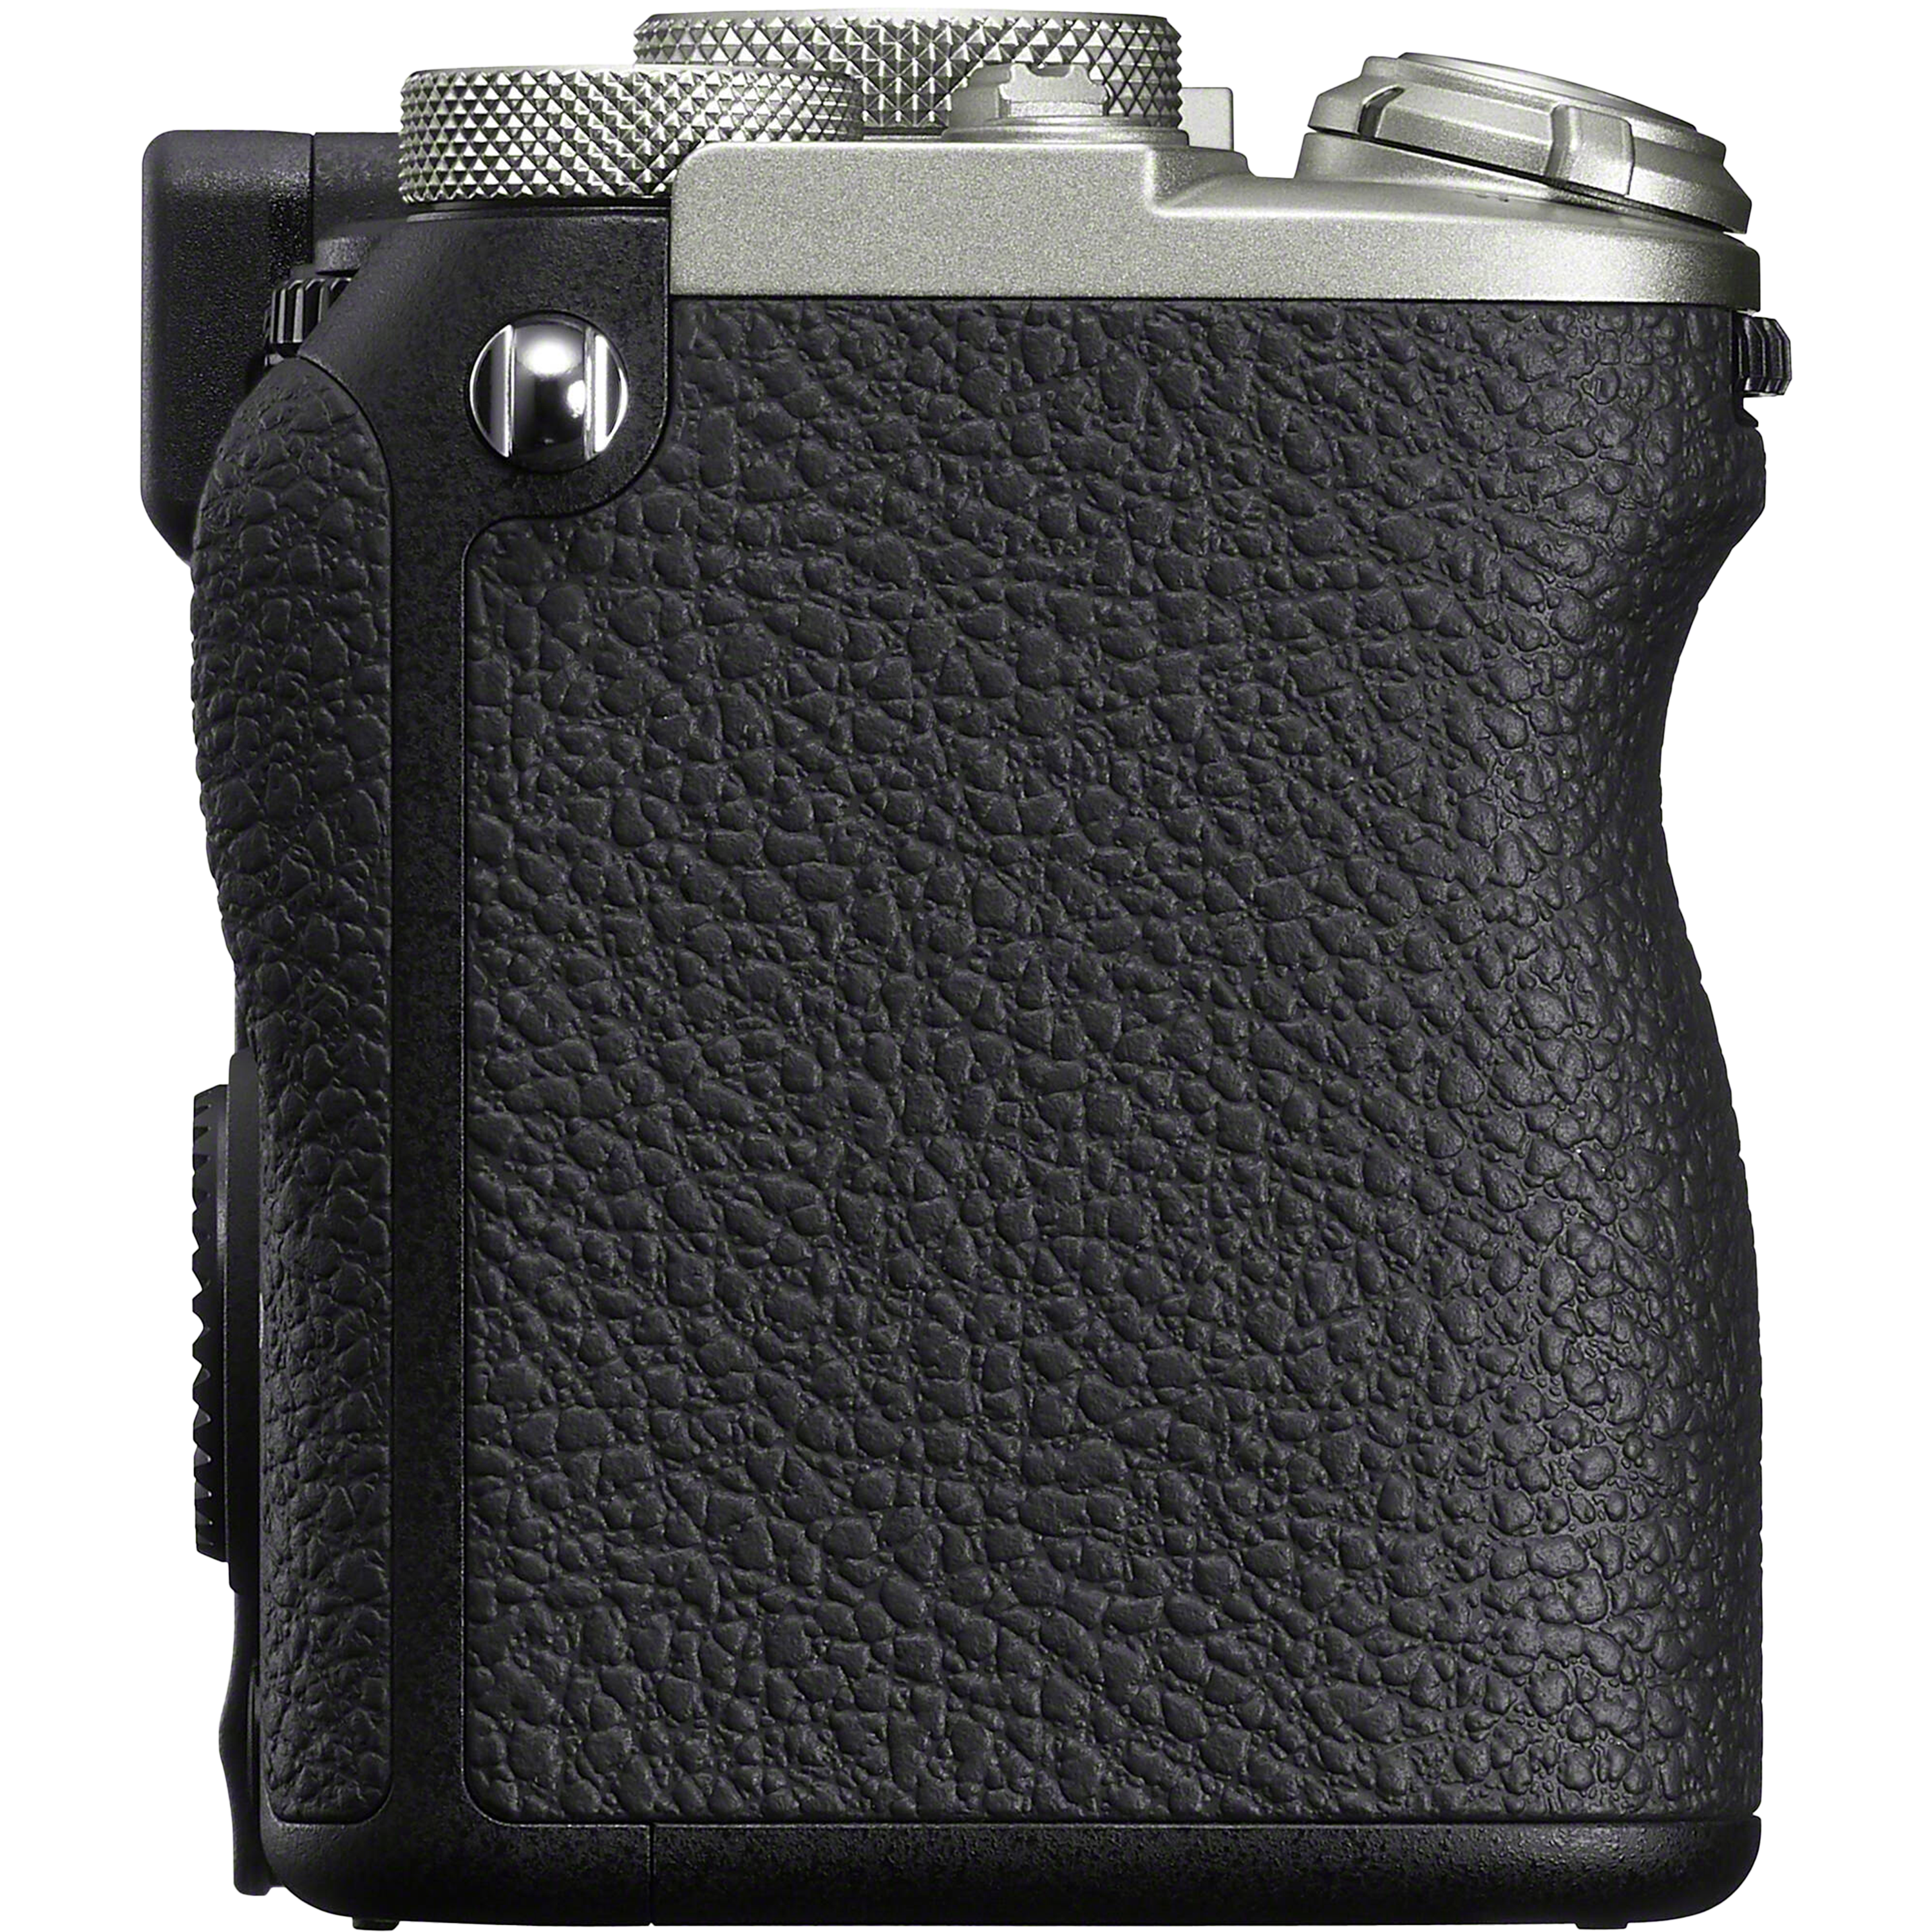 מצלמה דיגיטלית ללא מראה הכוללת עדשה Sony Alpha 7C II FE 28-60mm f/4-5.6 - צבע כסוף שלוש שנות אחריות ע